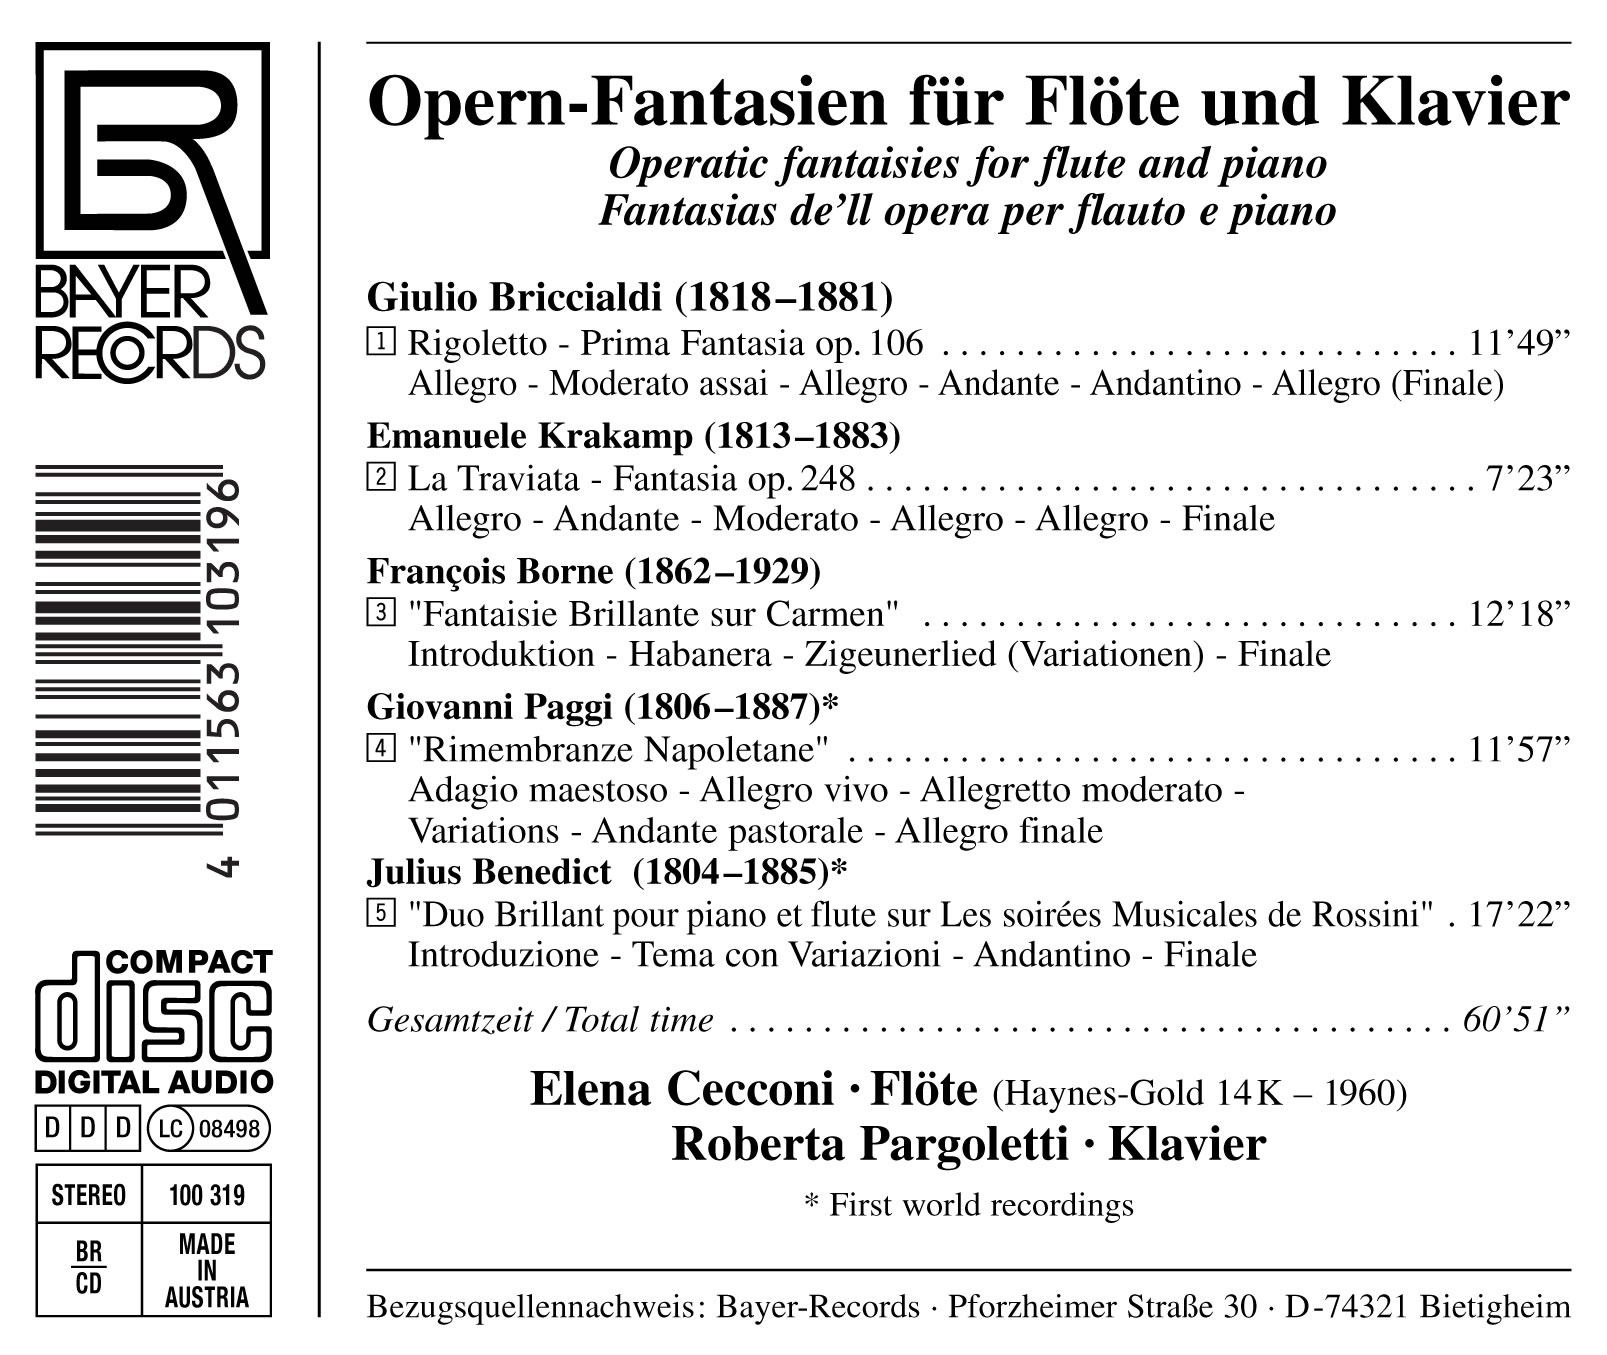 Opern-Fantasien für Flöte und Klavier